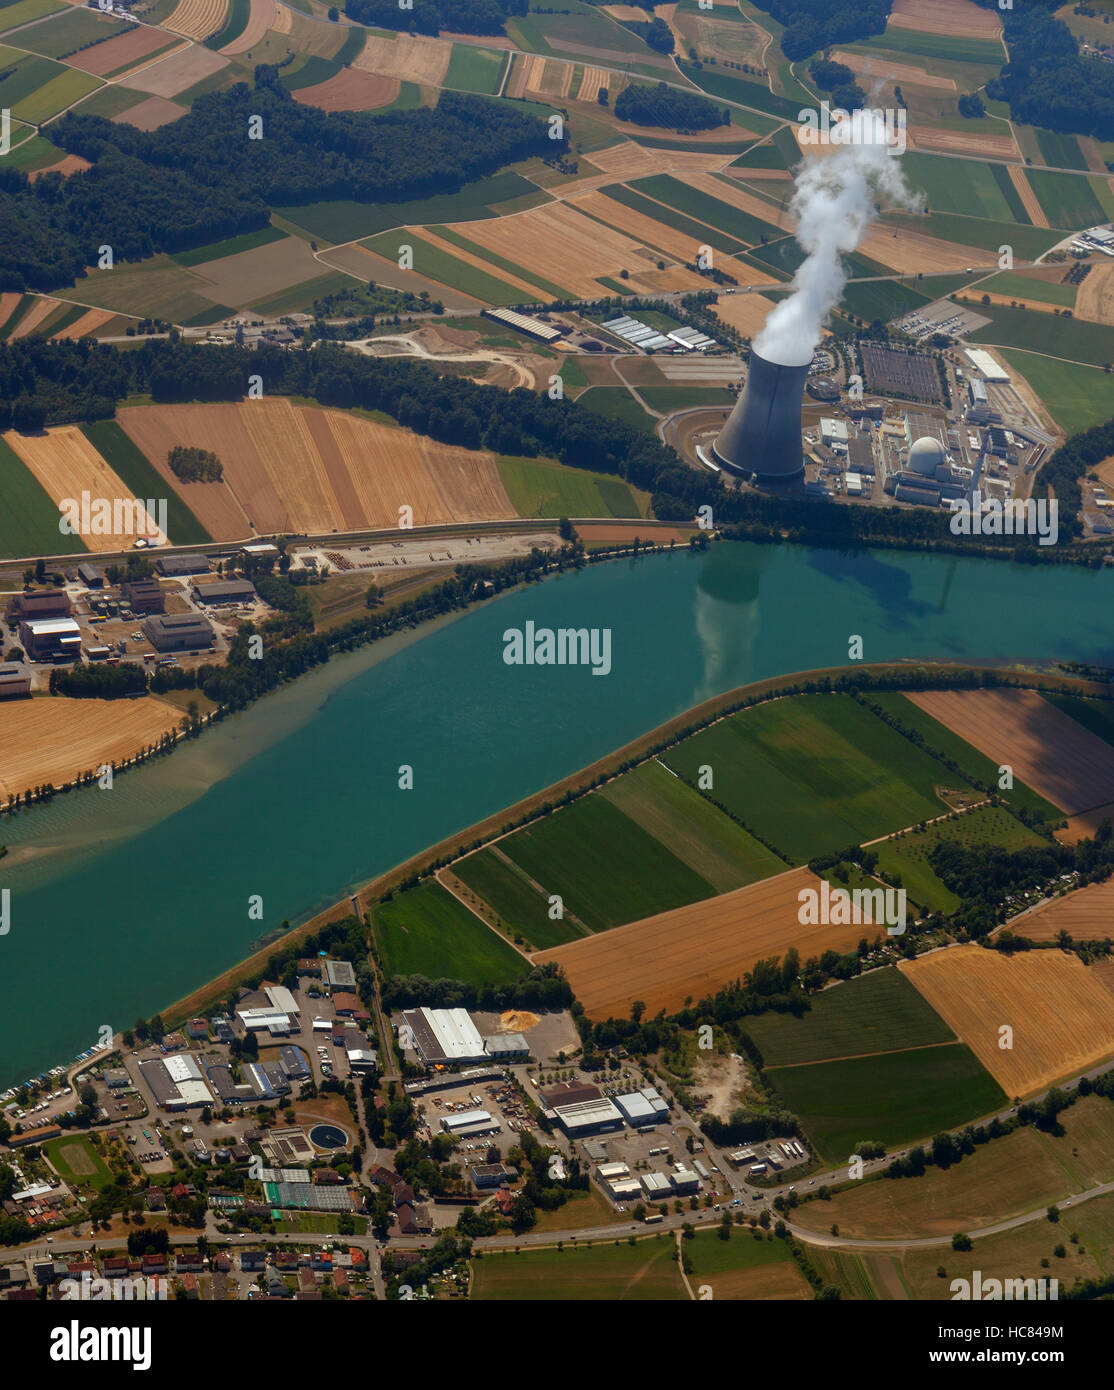 Nuclear power plant avec une vue d'ensemble de la pollution de l'écologie. Banque D'Images